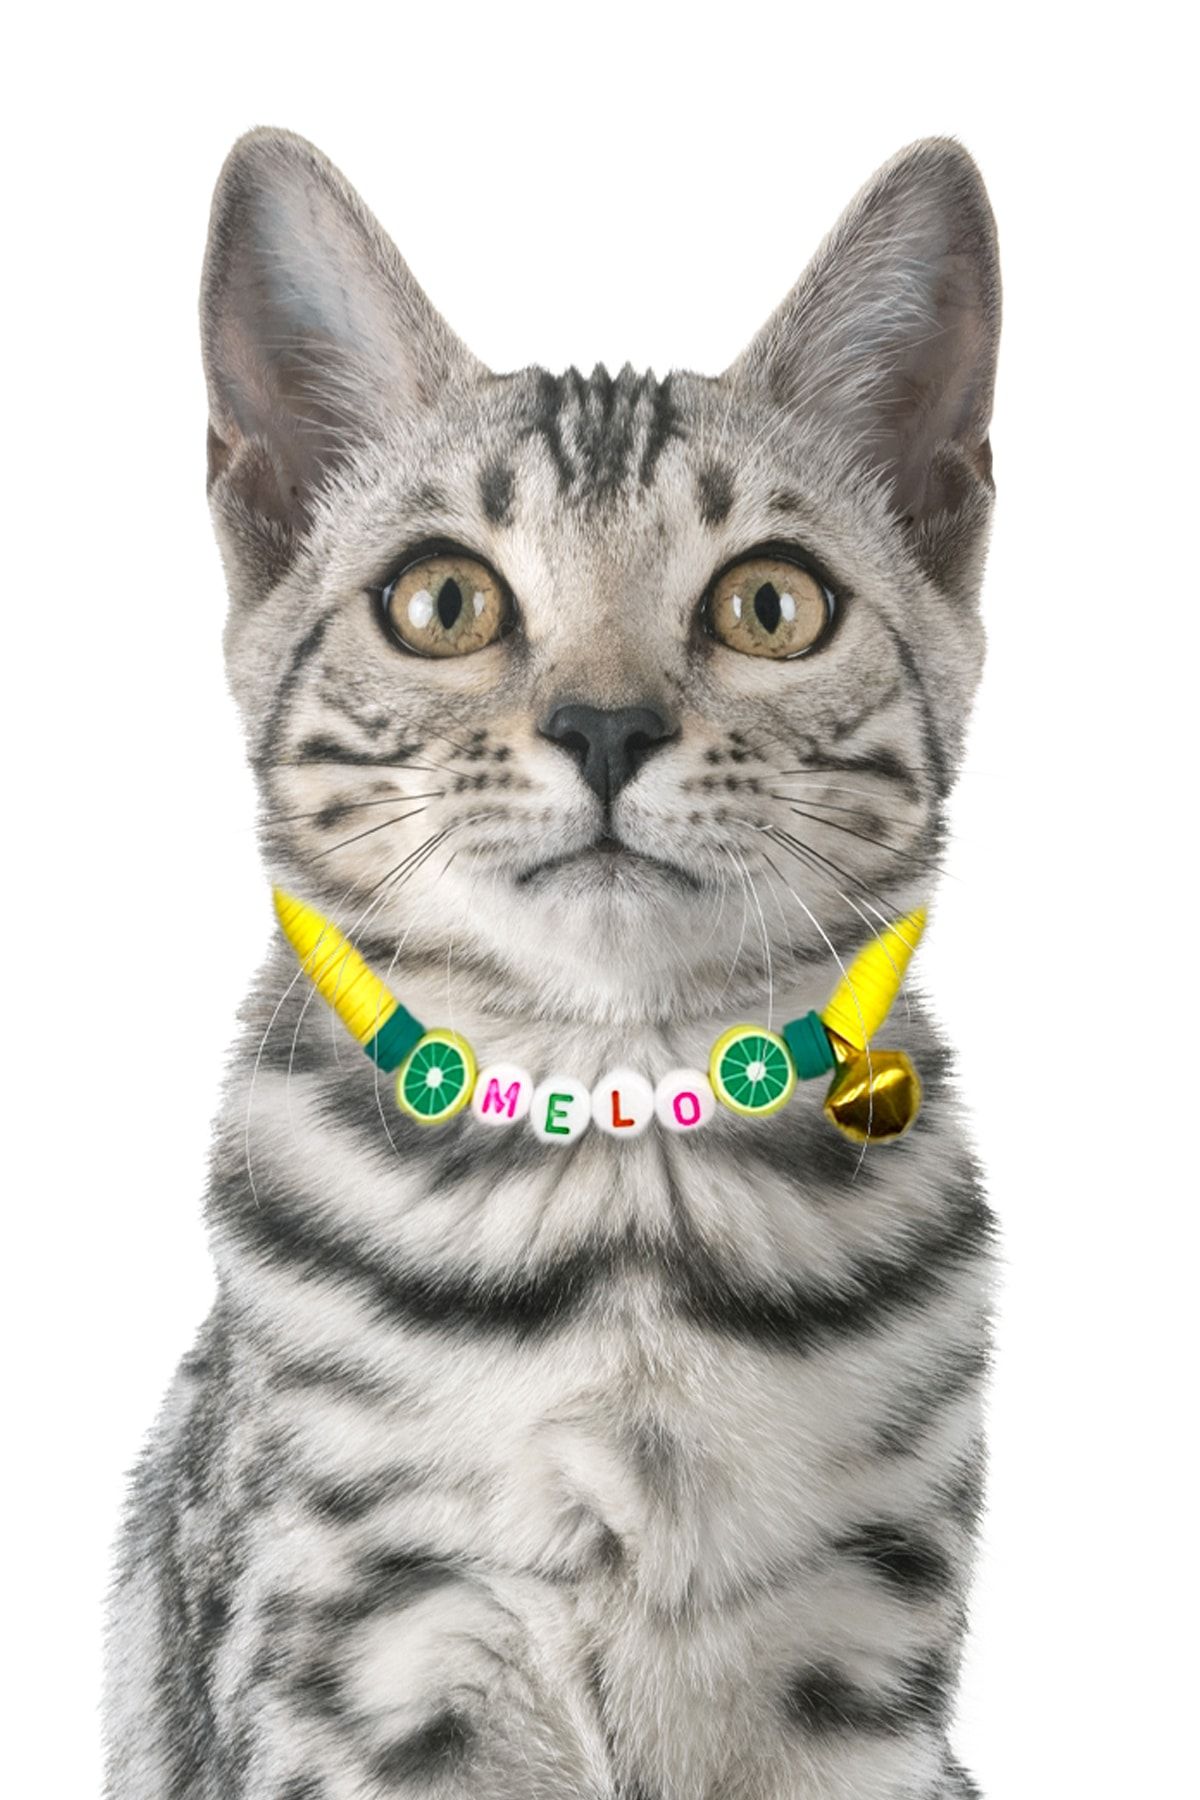 Petella Kedi Boyun Tasması Kedi Kolyesi Isimli Kedi Tasması Ayarlanabilir Limon Detaylı